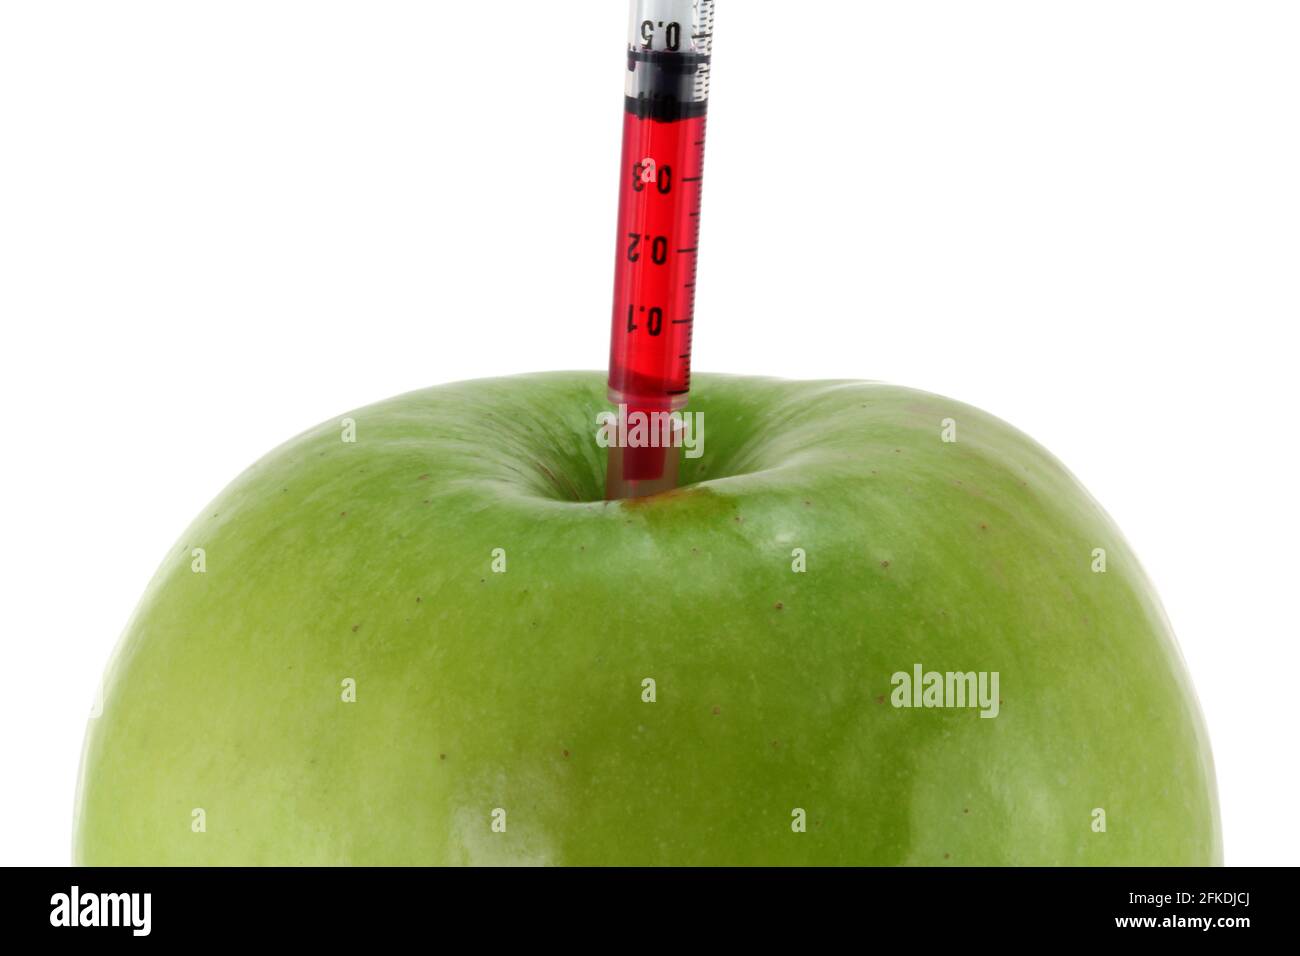 Konzeptfoto der genetischen Veränderung - Red Liquid injiziert einen grünen Apfel Stockfoto